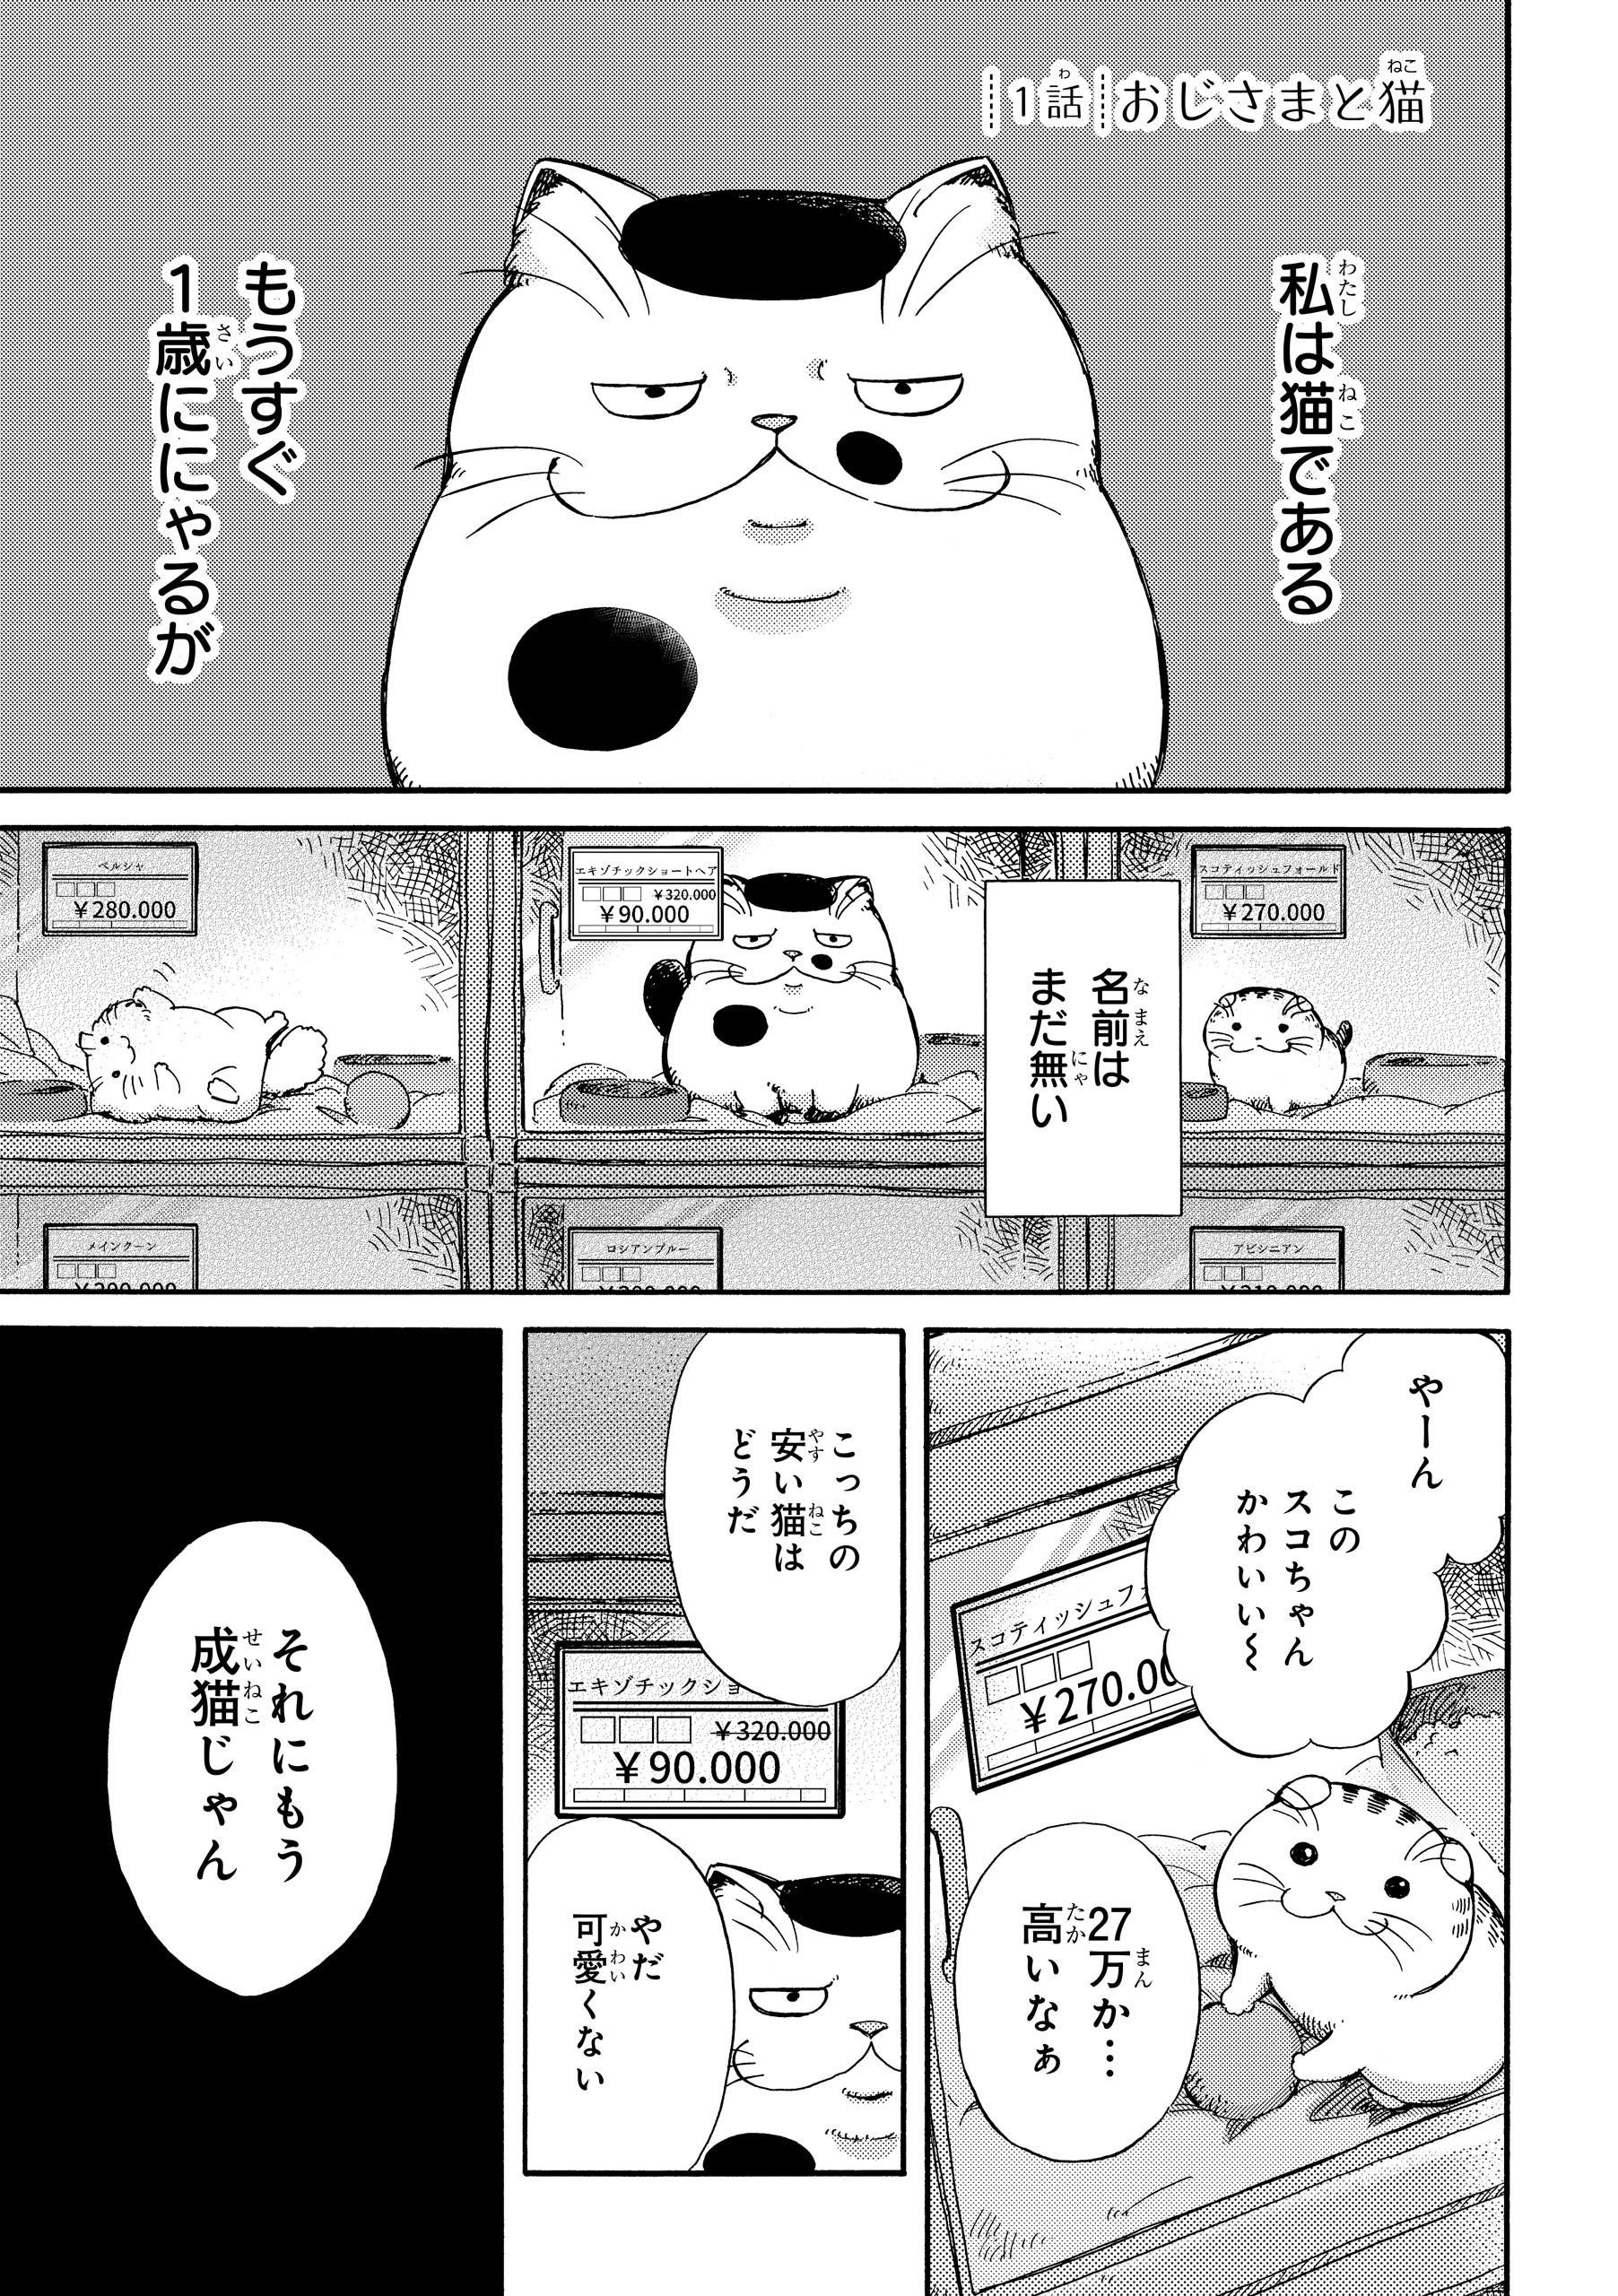 おじさまと猫 漫画1話 8話をお届け Twitter